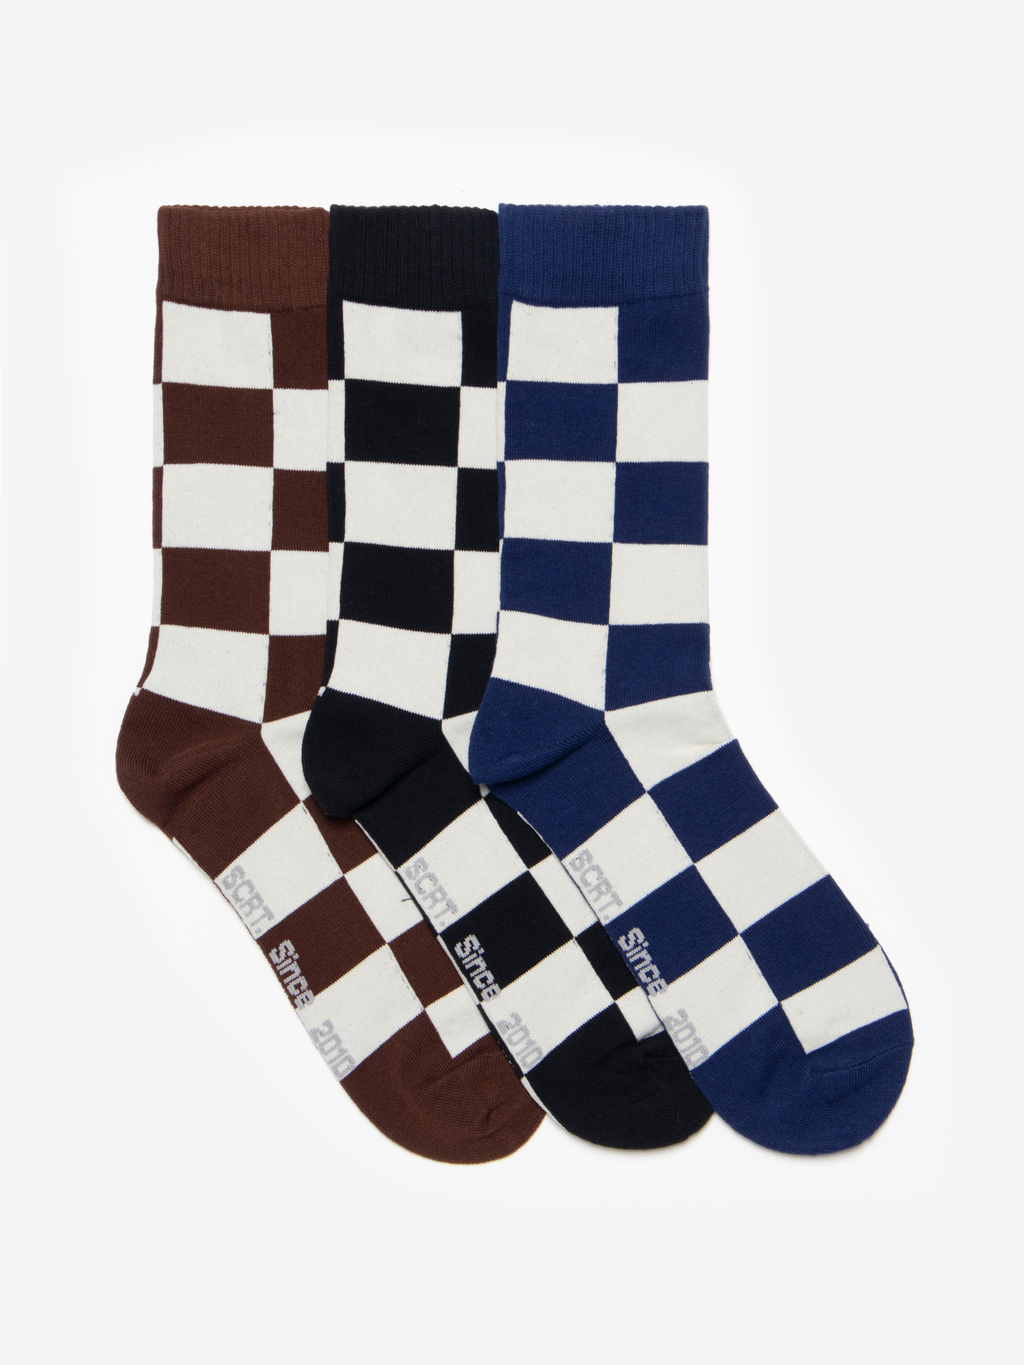 3 Pack of Checkered Socks - Multi